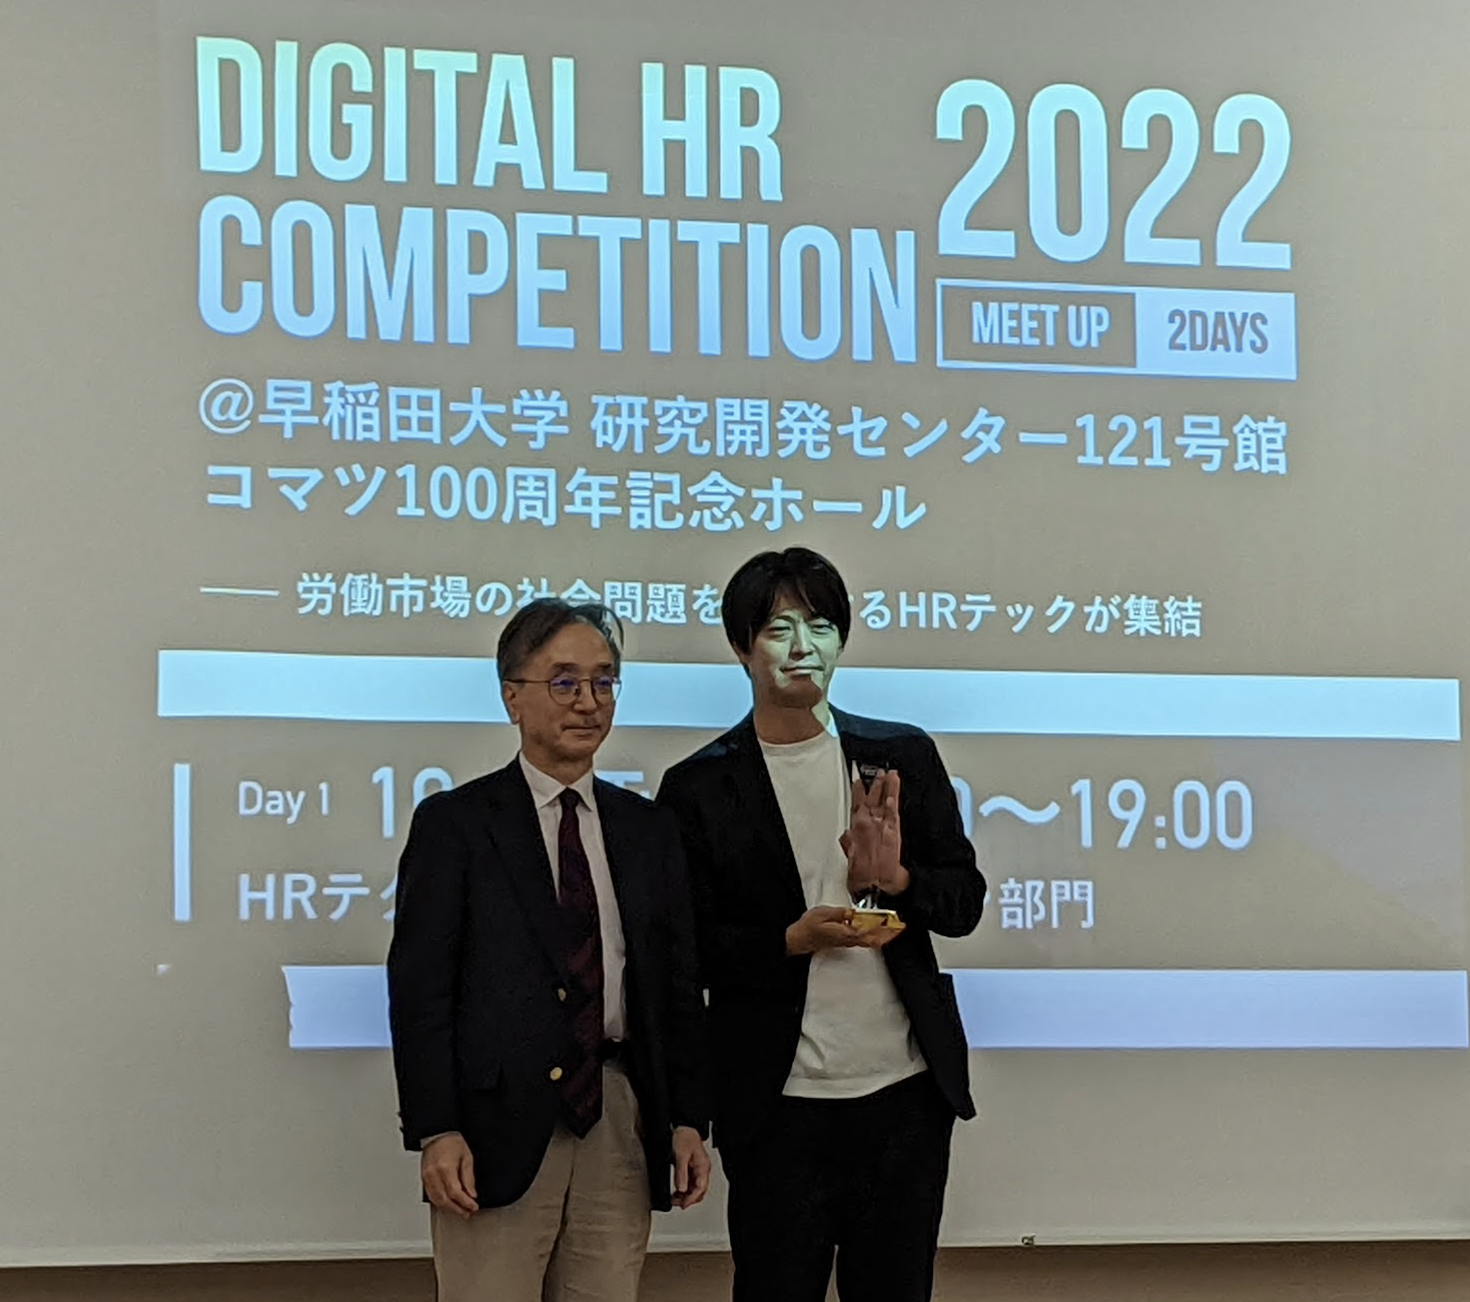 Digital HR Competition 2022 HRテクノロジーソリューション部門 で Beatrust がグランプリを受賞しました